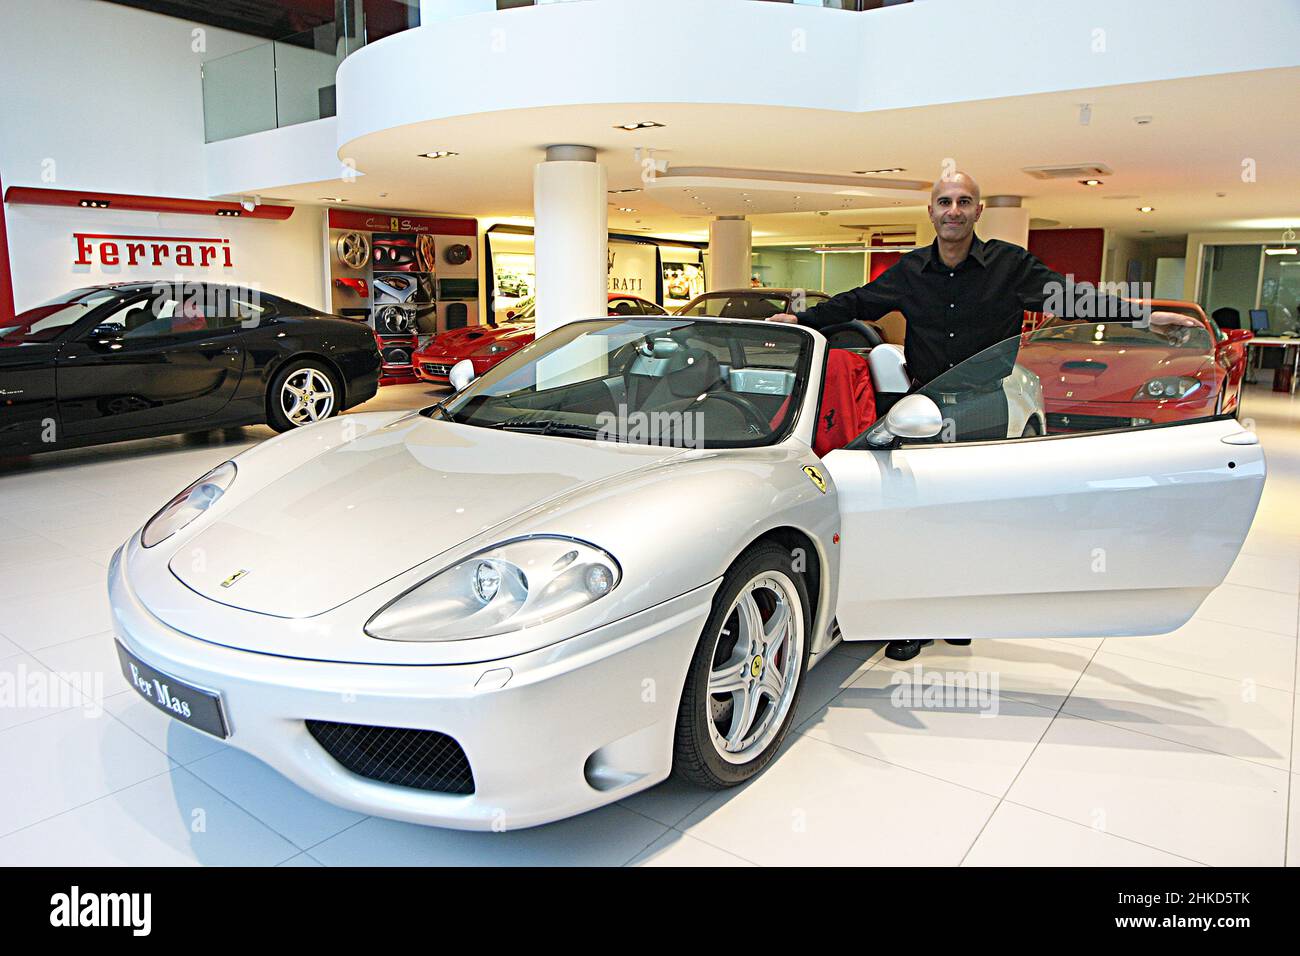 ISTANBUL, TURCHIA - OTTOBRE 17: Autore canadese, relatore ed esperto di leadership Robin Sharma il 17 ottobre 2006 a Istanbul, Turchia. È l'autore dei Best seller, il Monk che ha venduto la sua Ferrari. Foto Stock